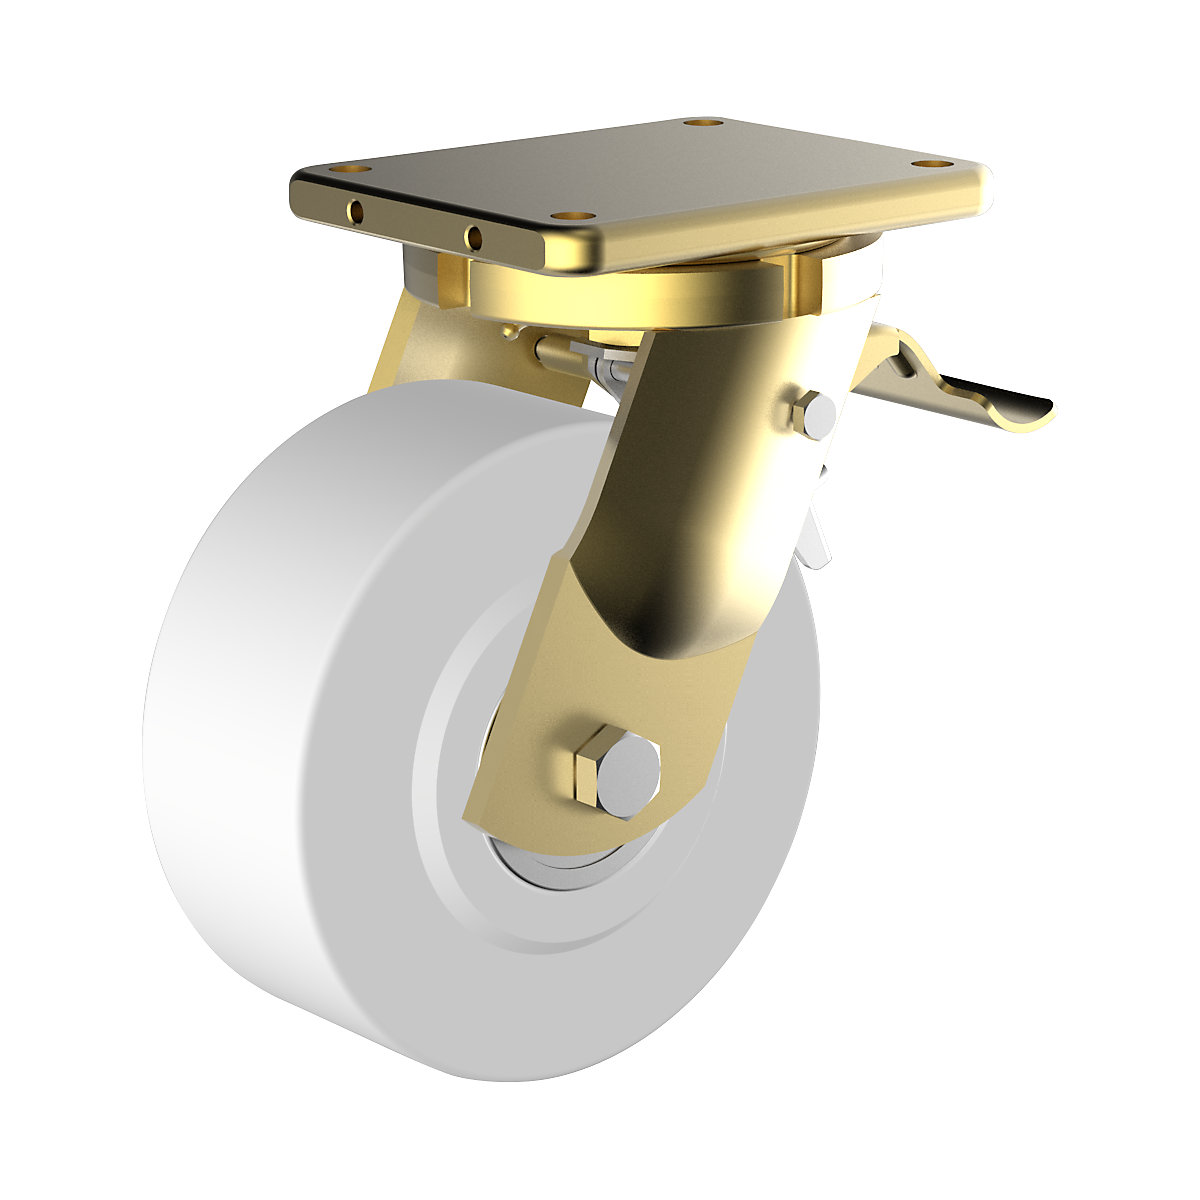 Polyamidové koleso, oceľové puzdro, zvárané – Wicke, Ø x šírka kolesa 100 x 55 mm, otočné koliesko s dvojitou brzdou-1